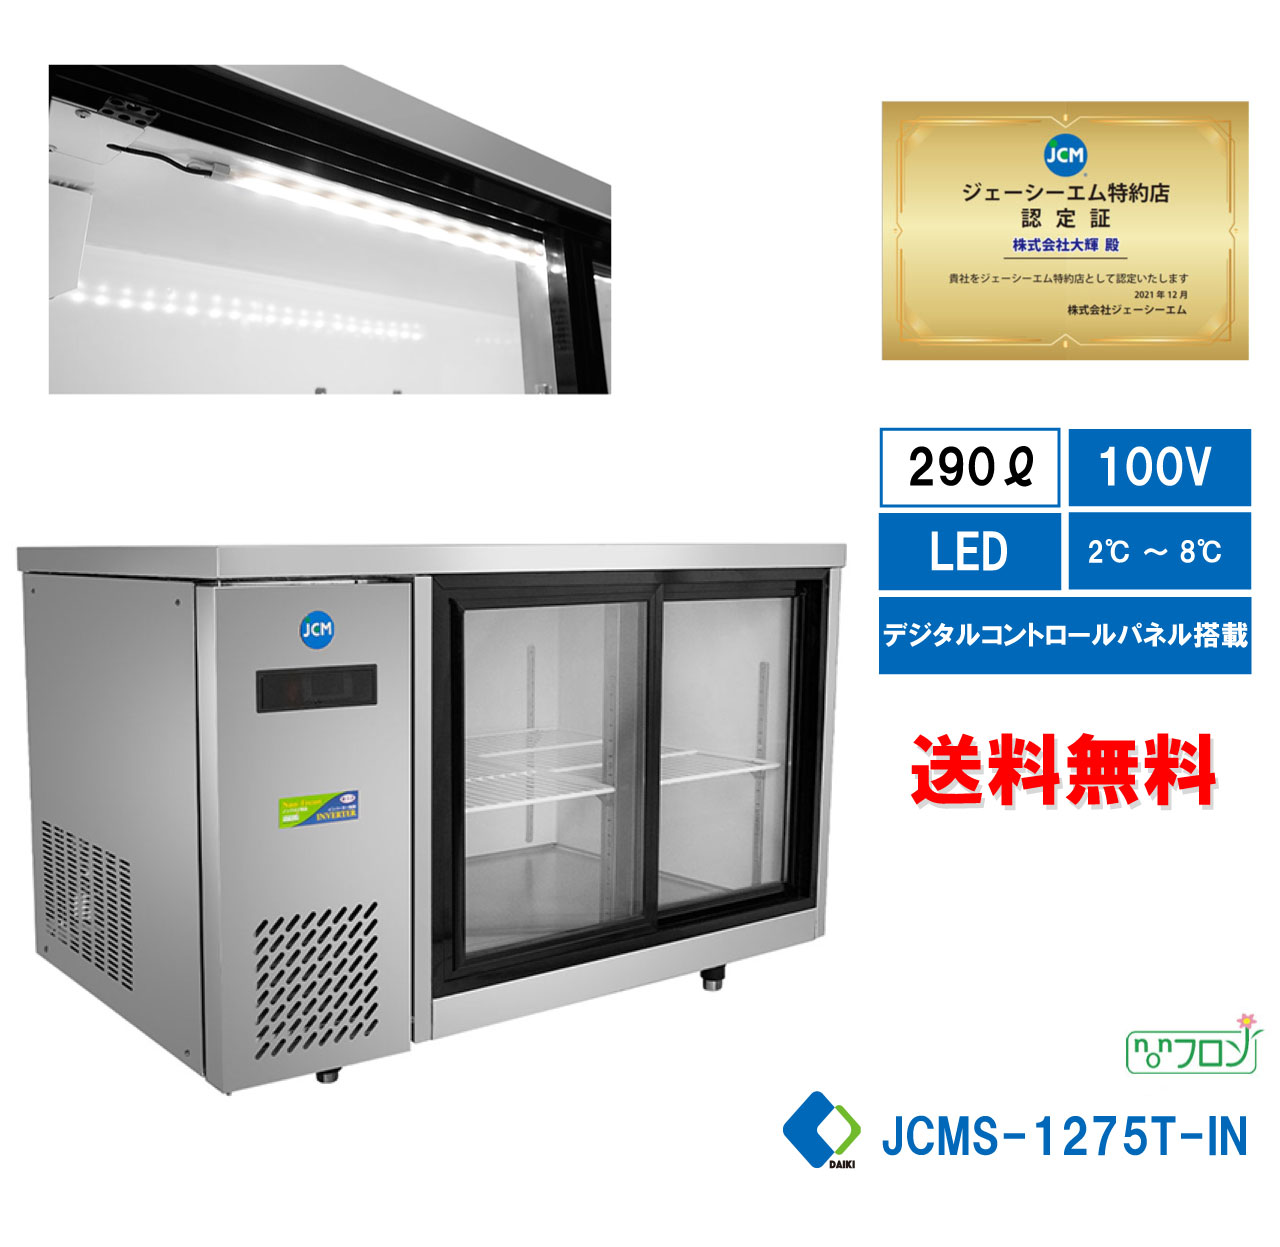  業務用 横型冷蔵ショーケース ビールショーケース JCM冷蔵ショーケース 横型冷蔵ケース 省エネ冷蔵庫 業務用冷蔵機器 LDE照明 